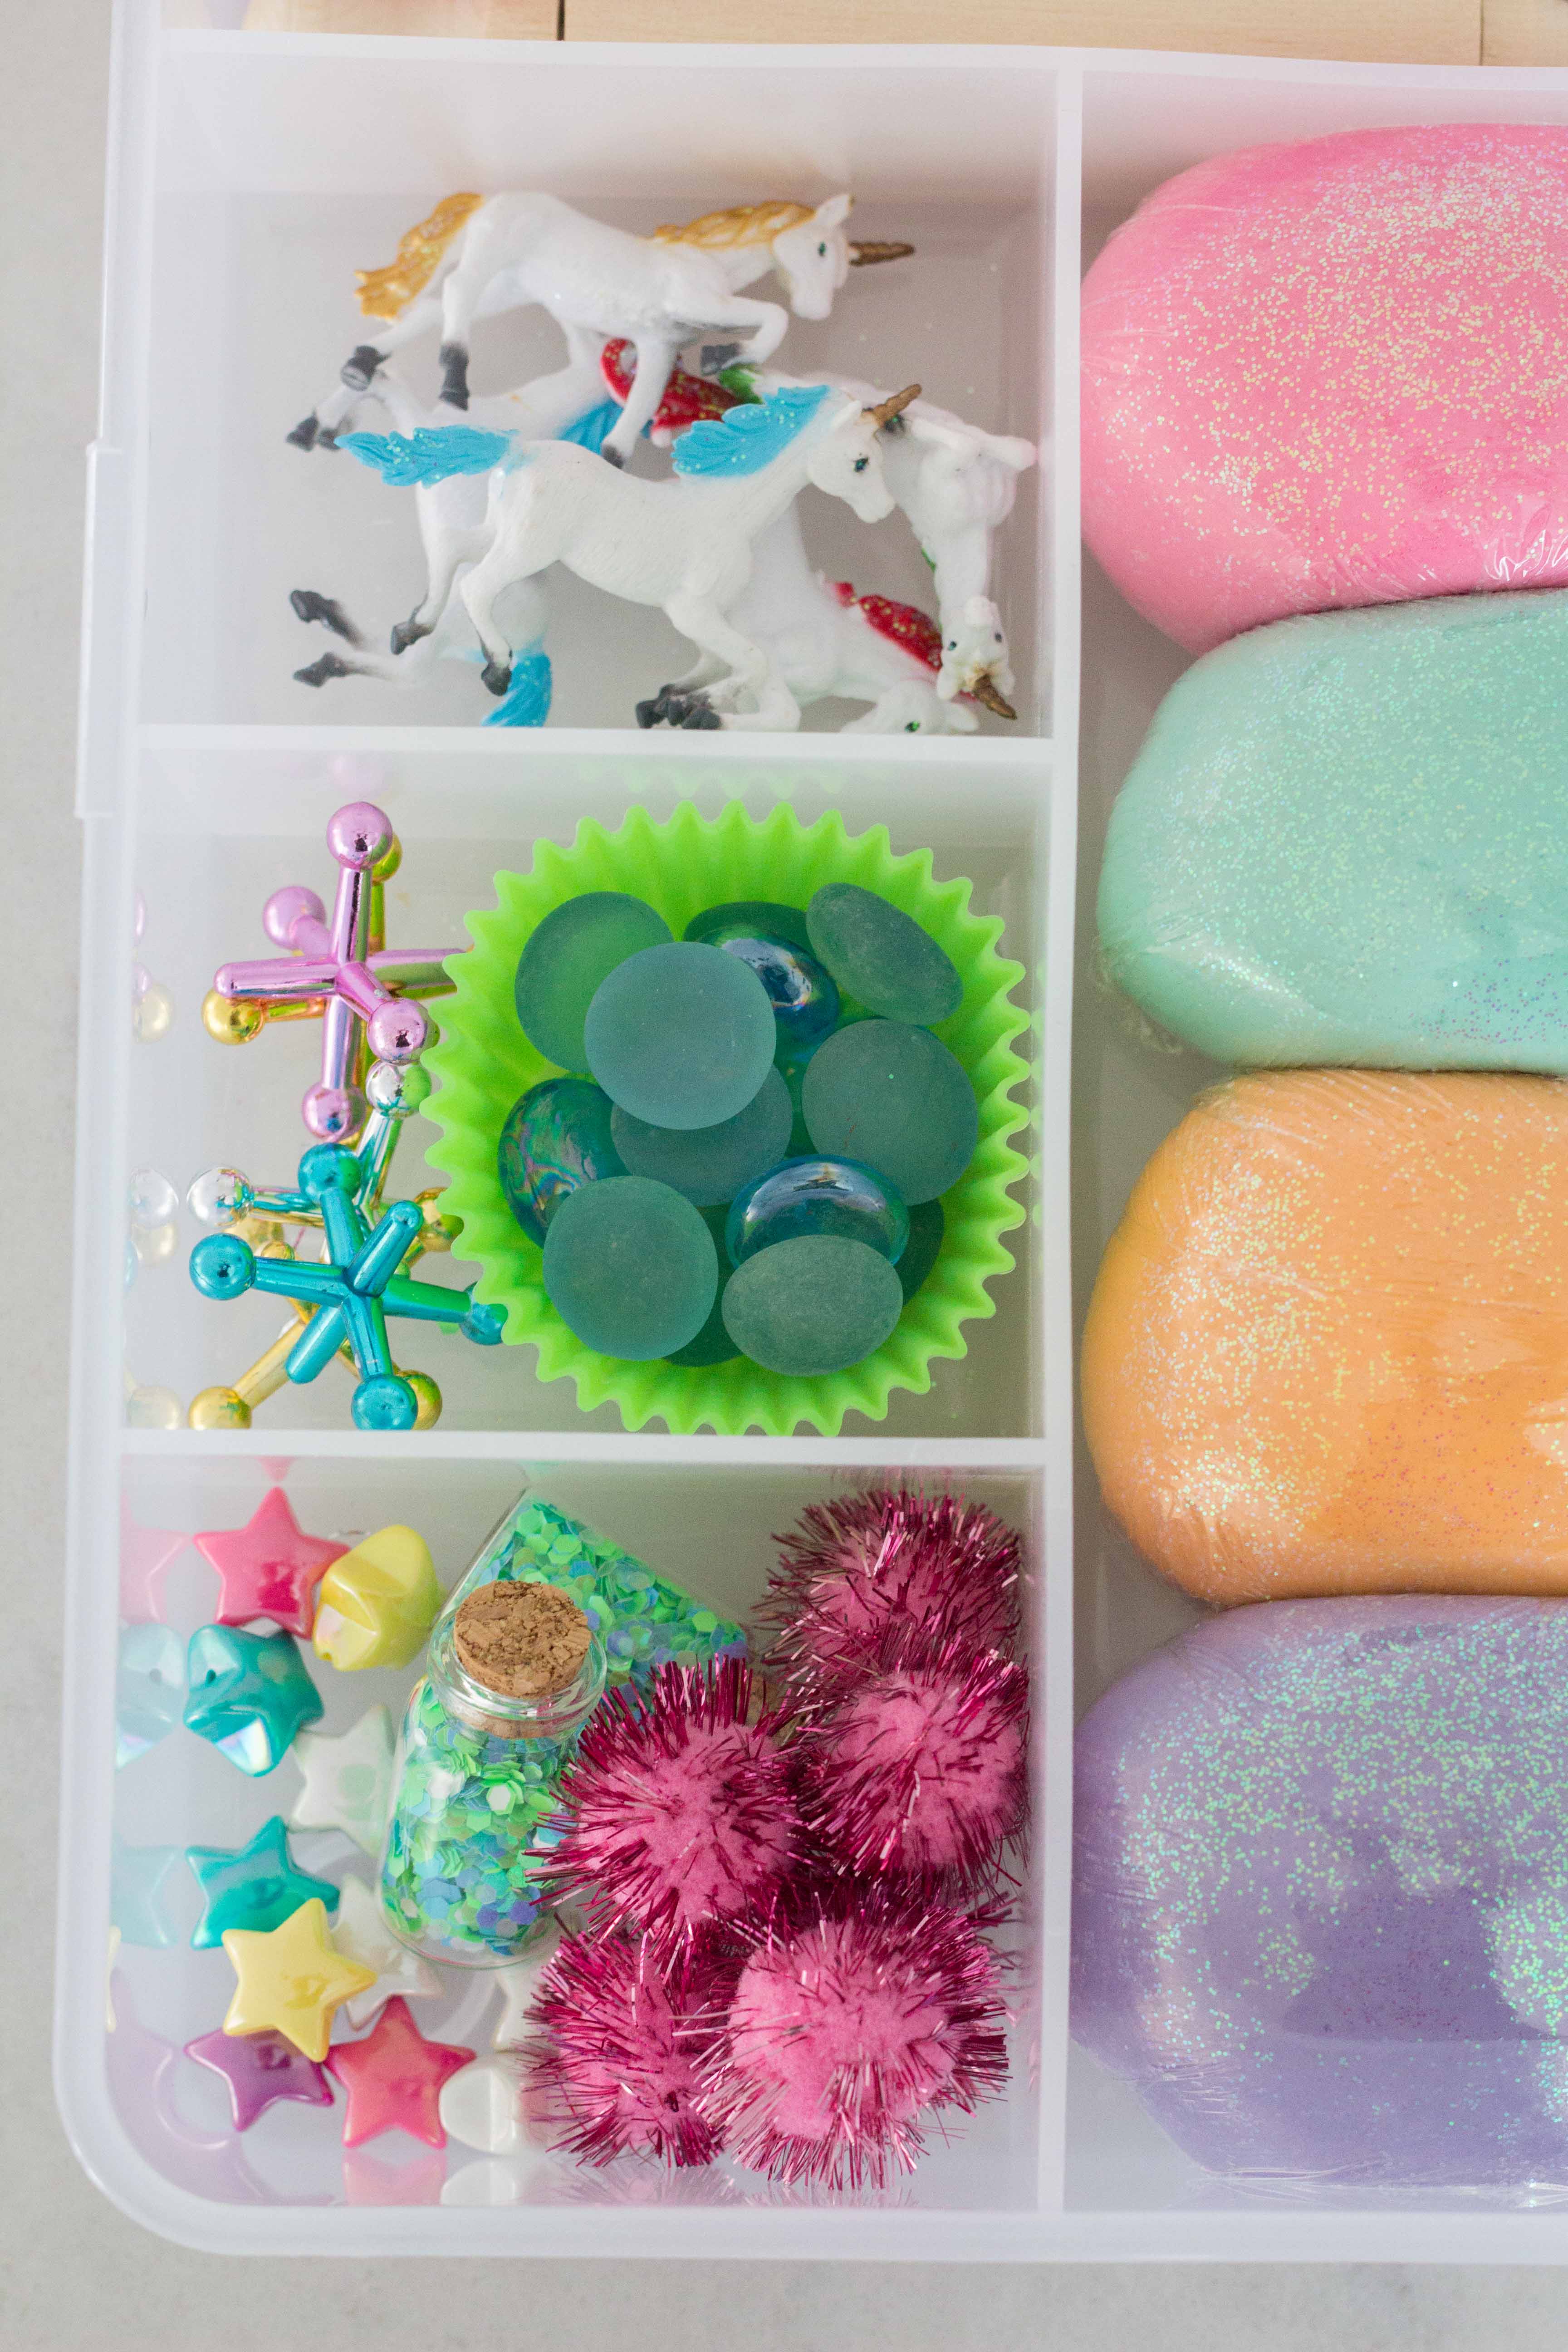 DIY on a Dime: Make a Playdough Kit